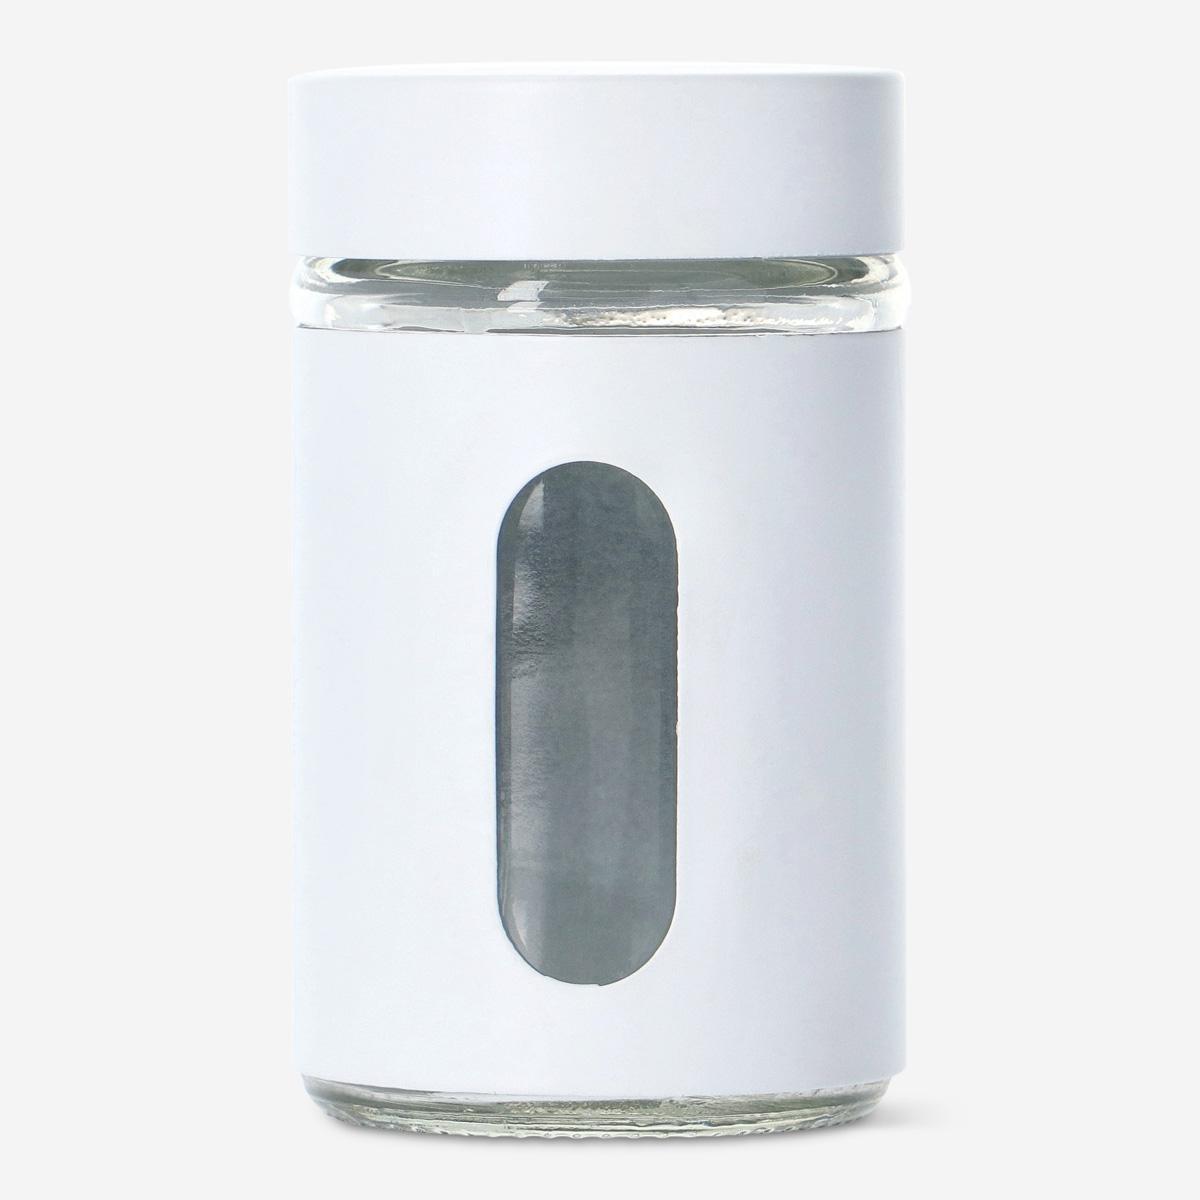 White salt shaker